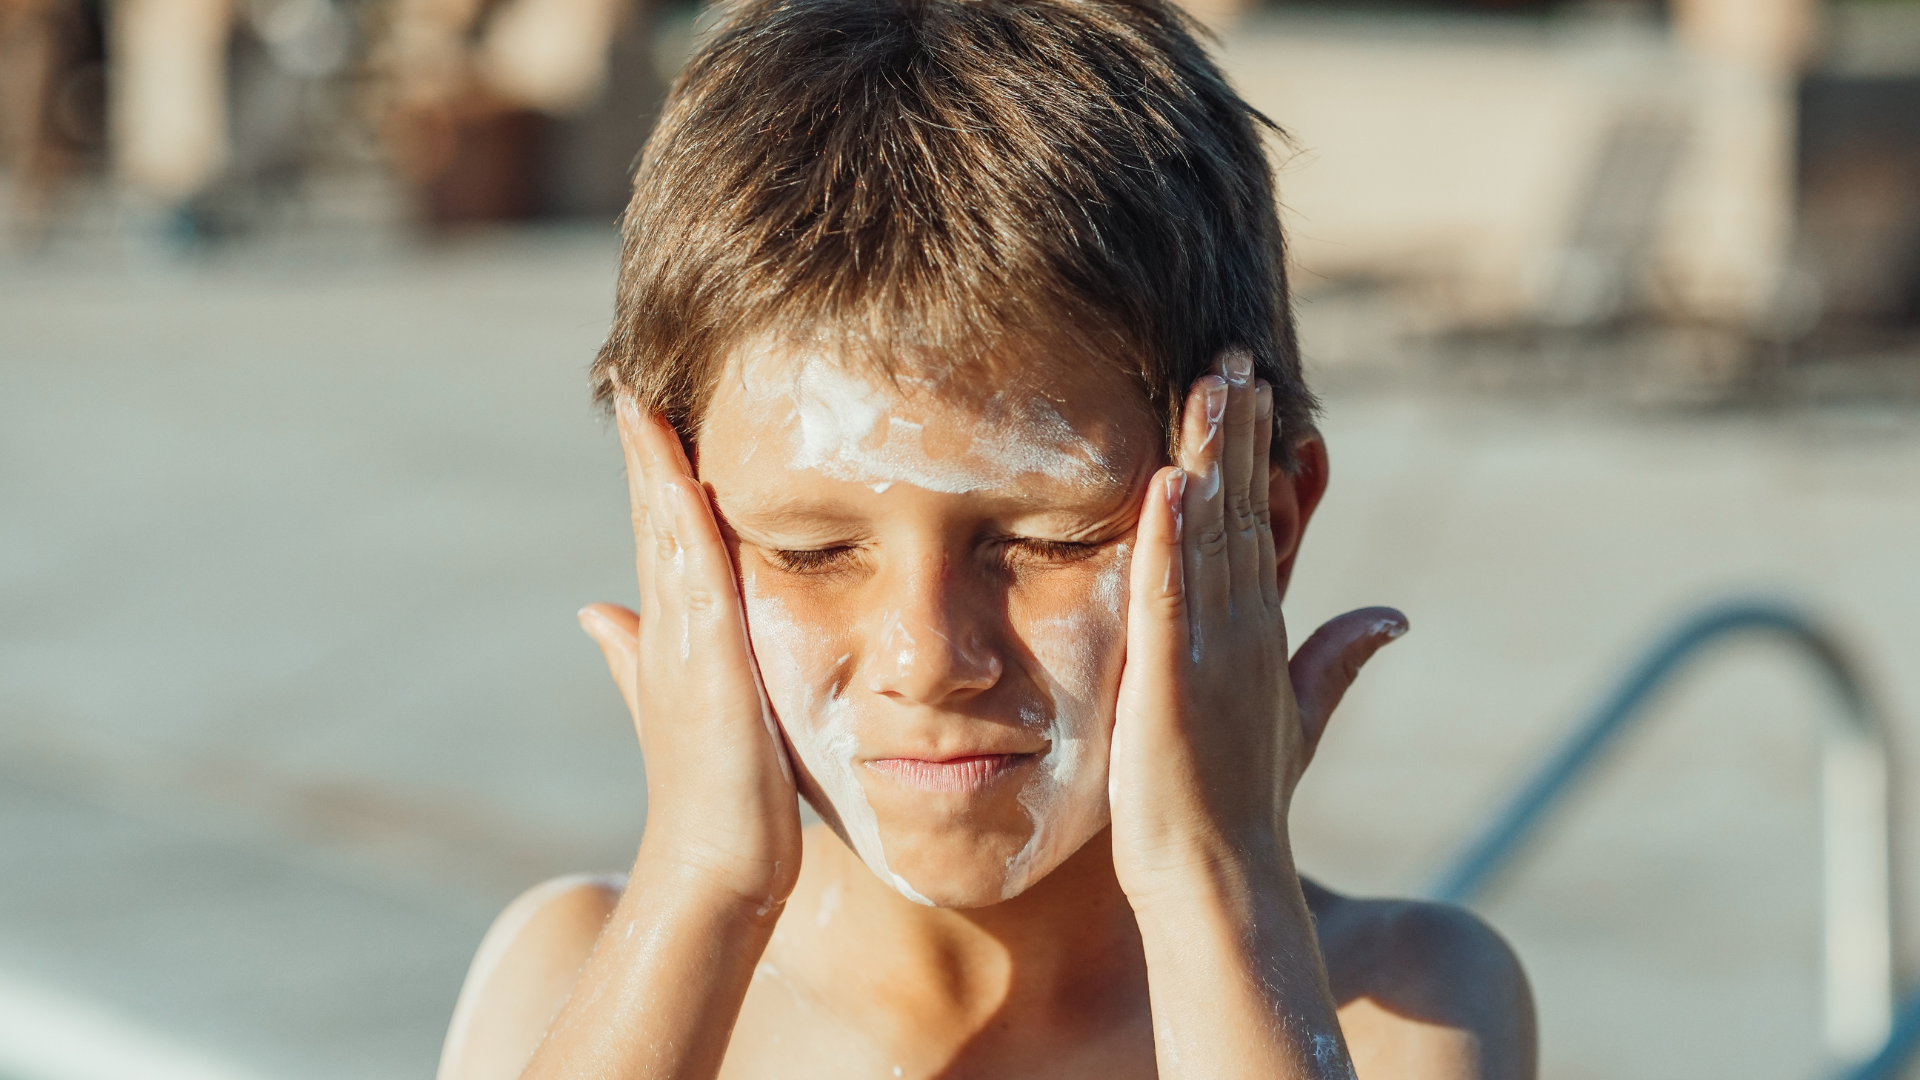 Le Cancer de la Peau : Les crèmes solaires, une réelle protection ?